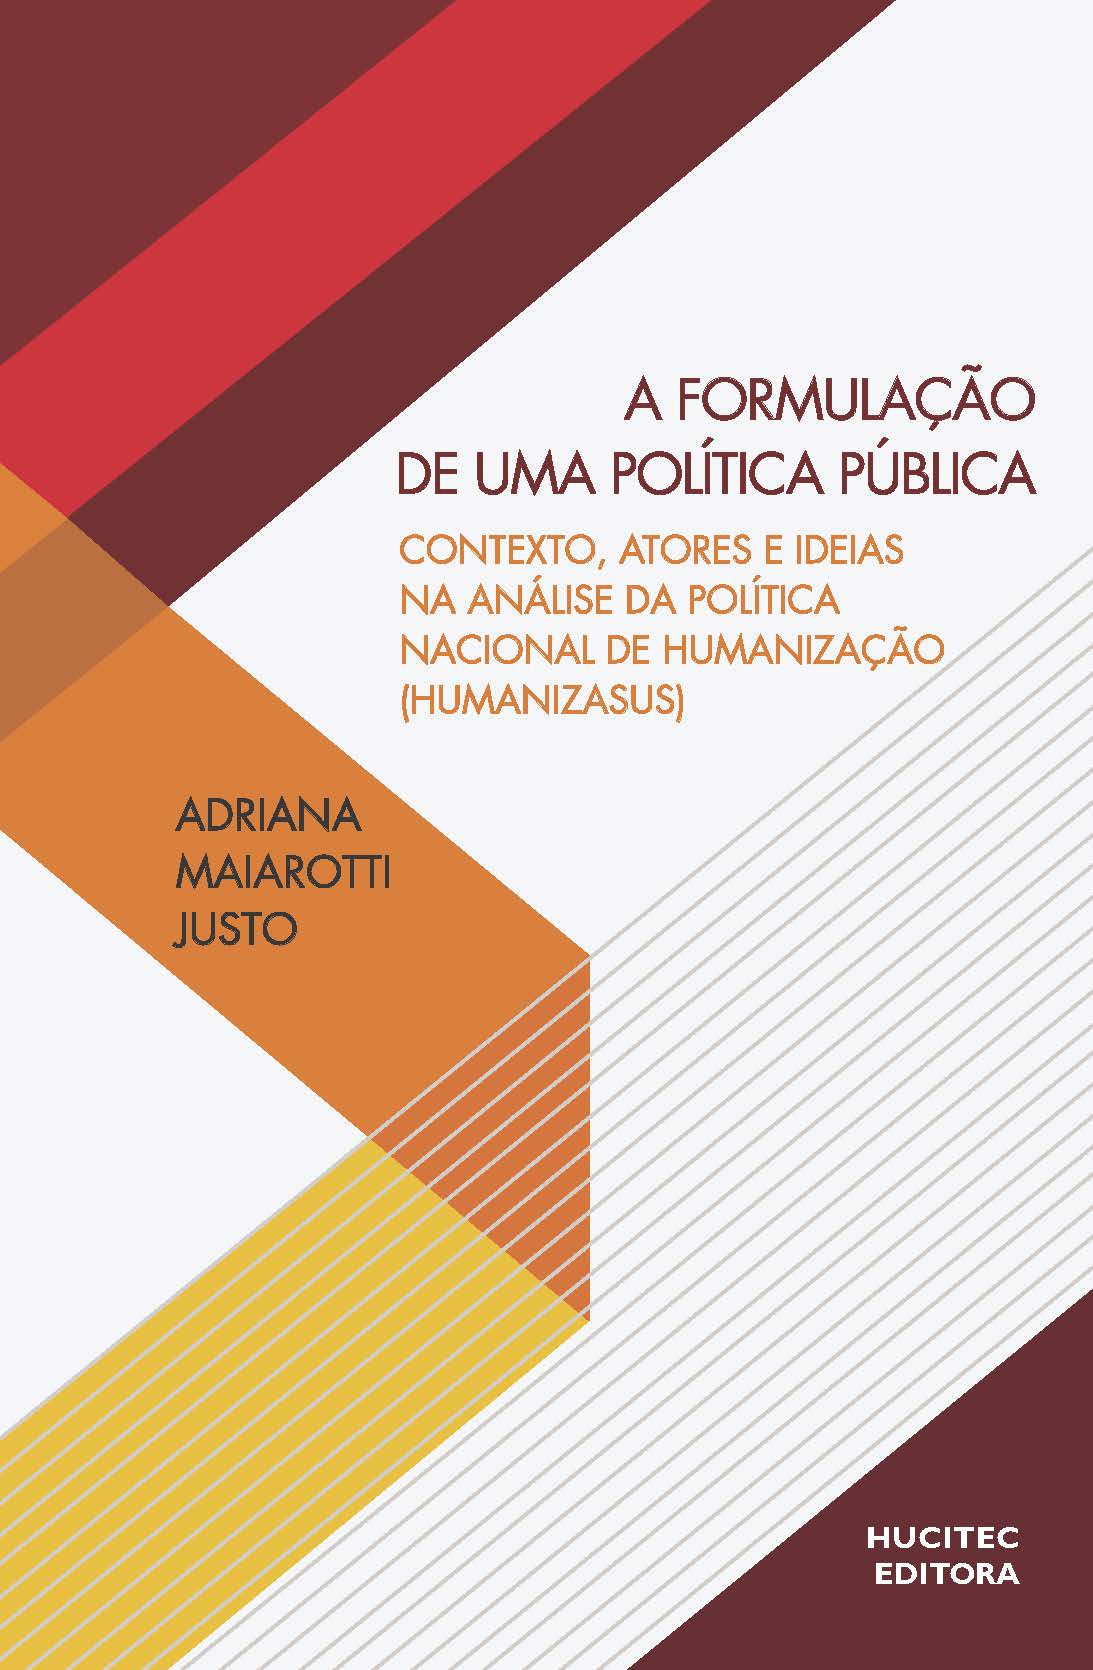 Adriana Maiarotti Justo  |  A formulação de uma política pública: contexto, atores e ideias na análise da política nacional de humanização (HumanizaSUS)